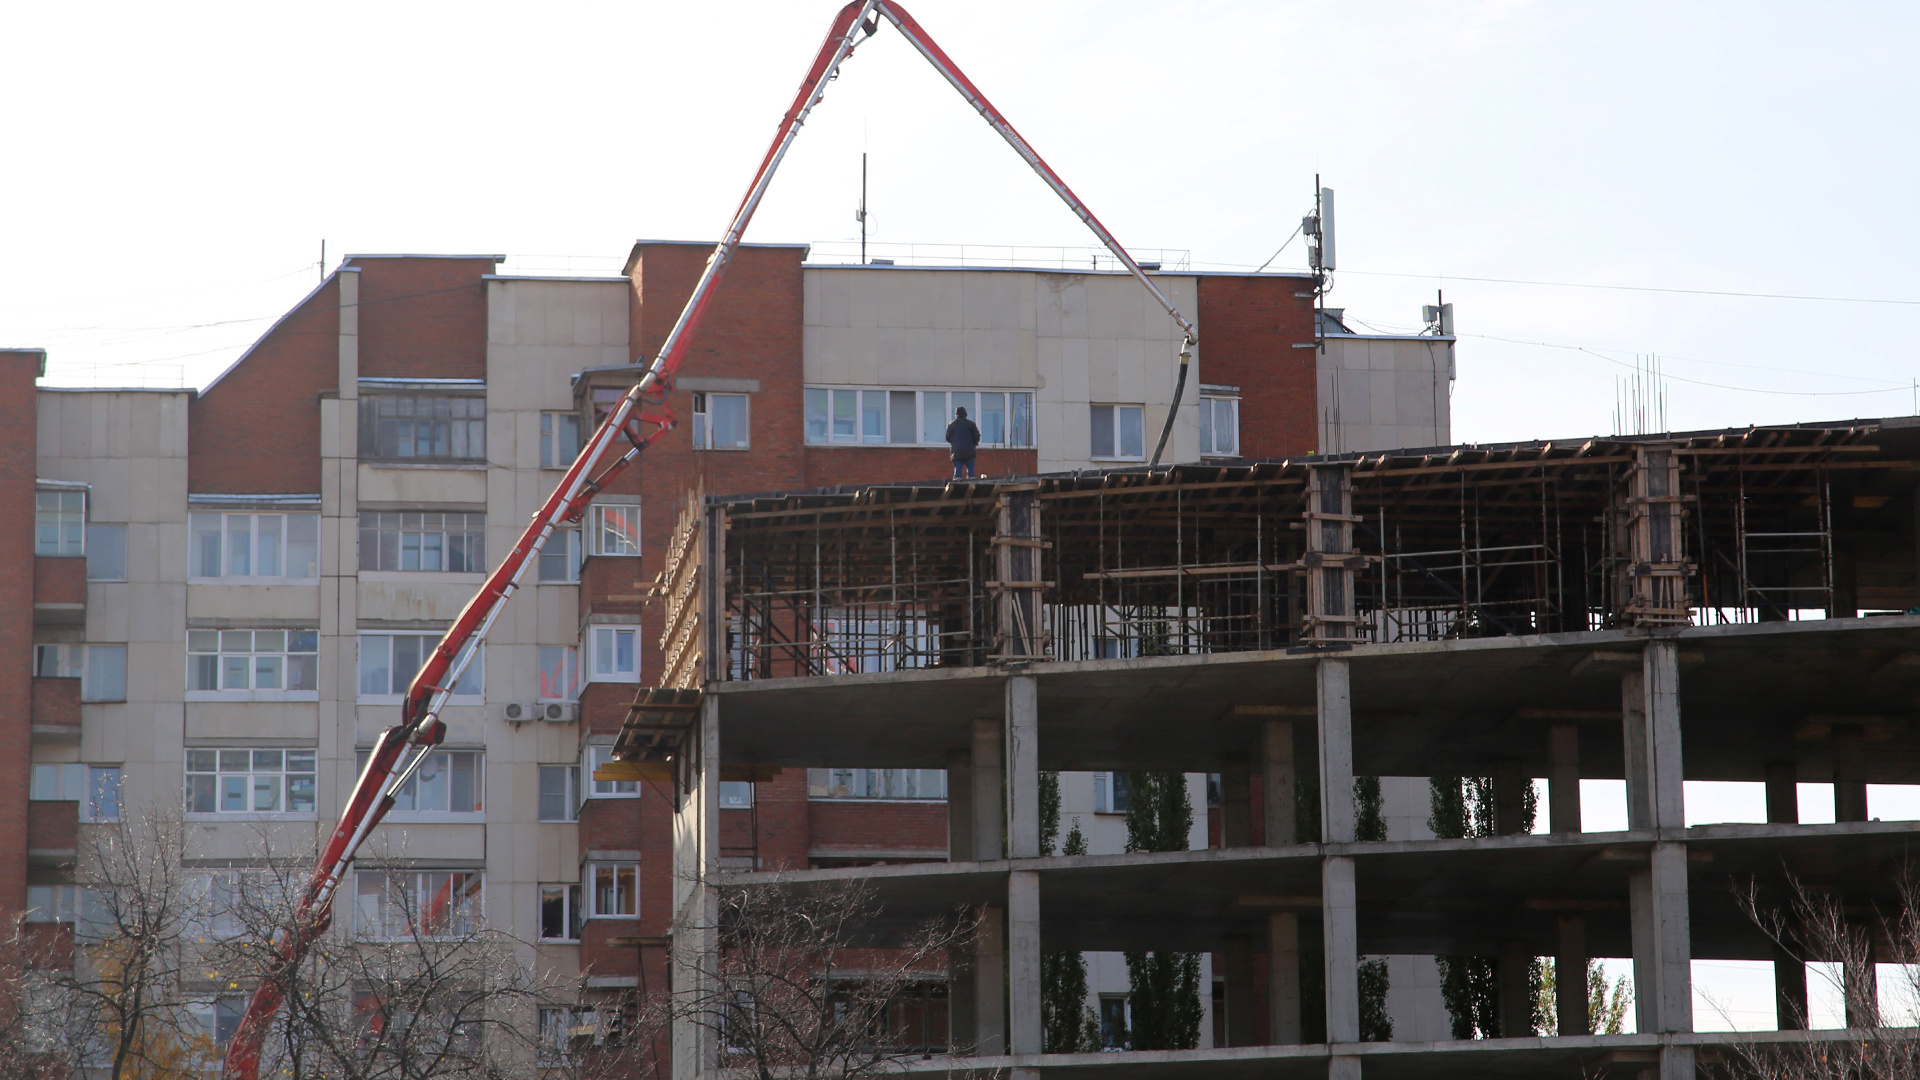 Купить квартиру или отложить деньги? Как изменился спрос на недвижимость в Башкирии после мобилизации